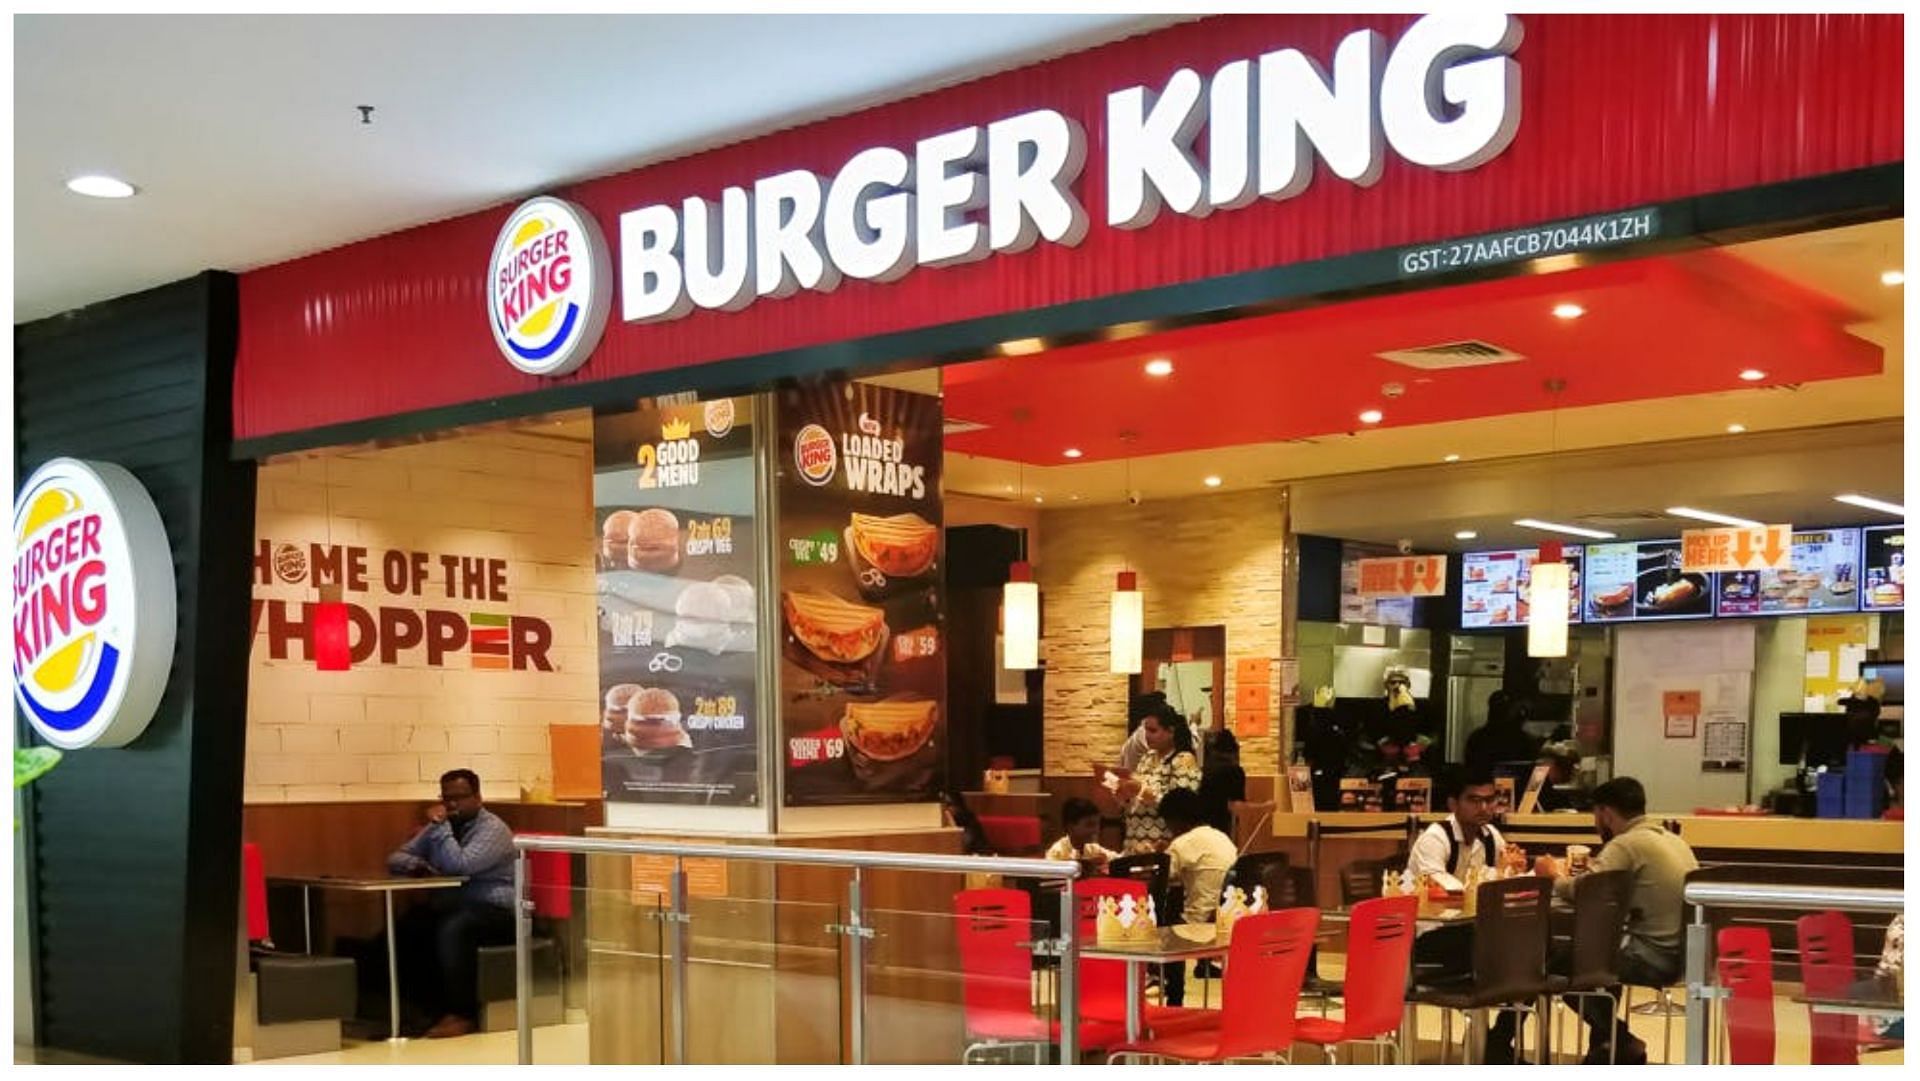 Burger King Outlet! (Image via Burger King)